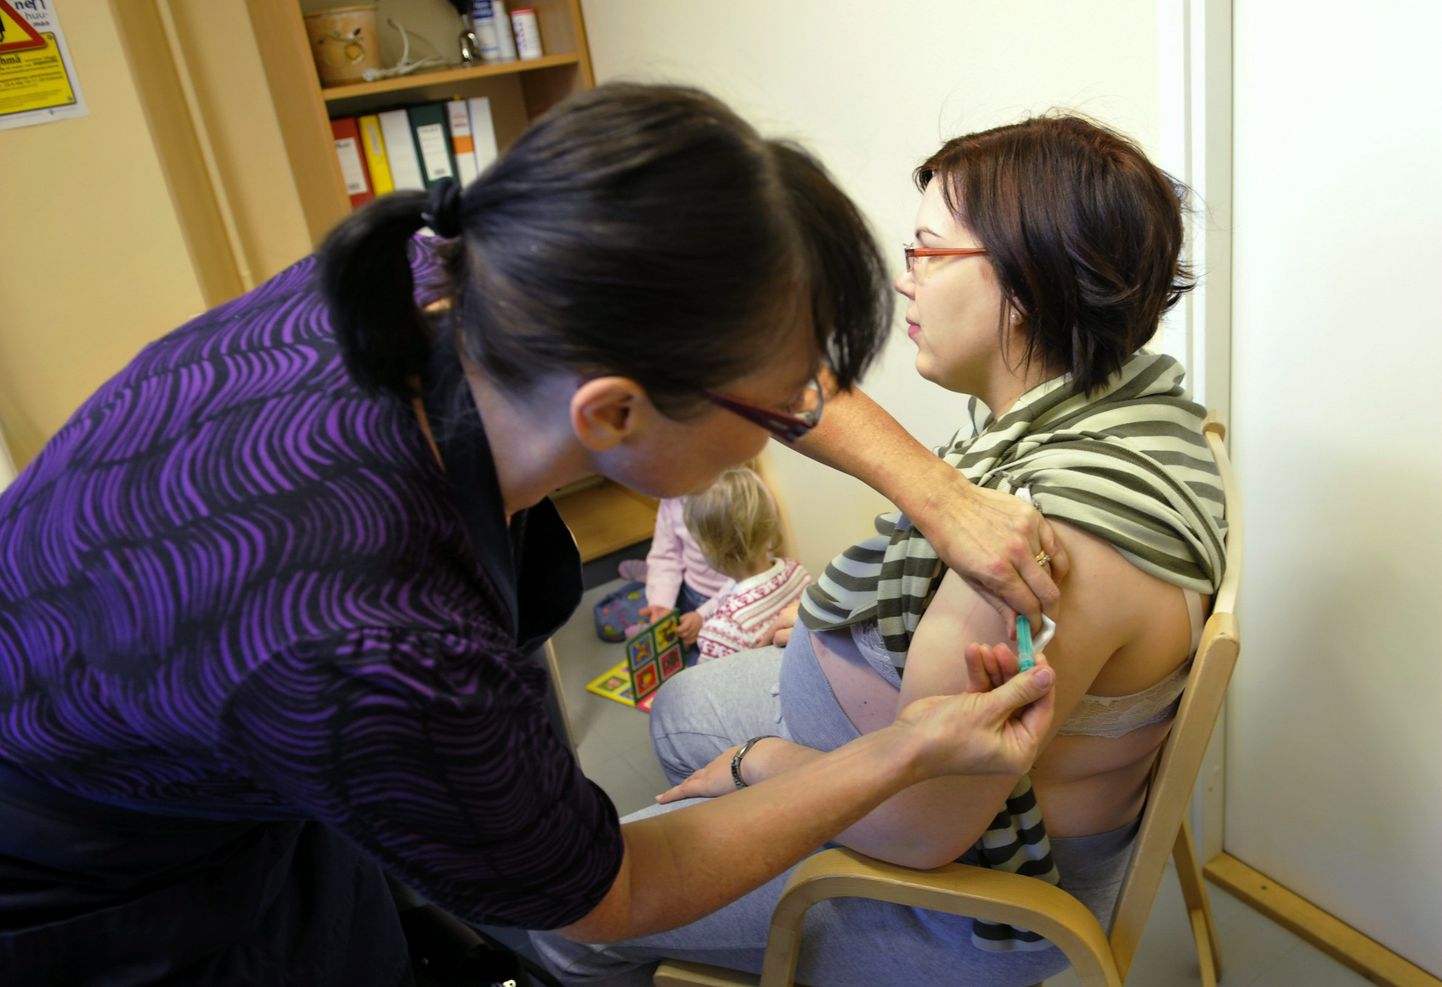 Soomes vaktsiinist puudust pole. Pildil vaktsineerib tervishoiutöötaja Heli Veikkola 28. oktoobril seagripi vastu Espoo linna elanikku Tiina Riihimäkit.